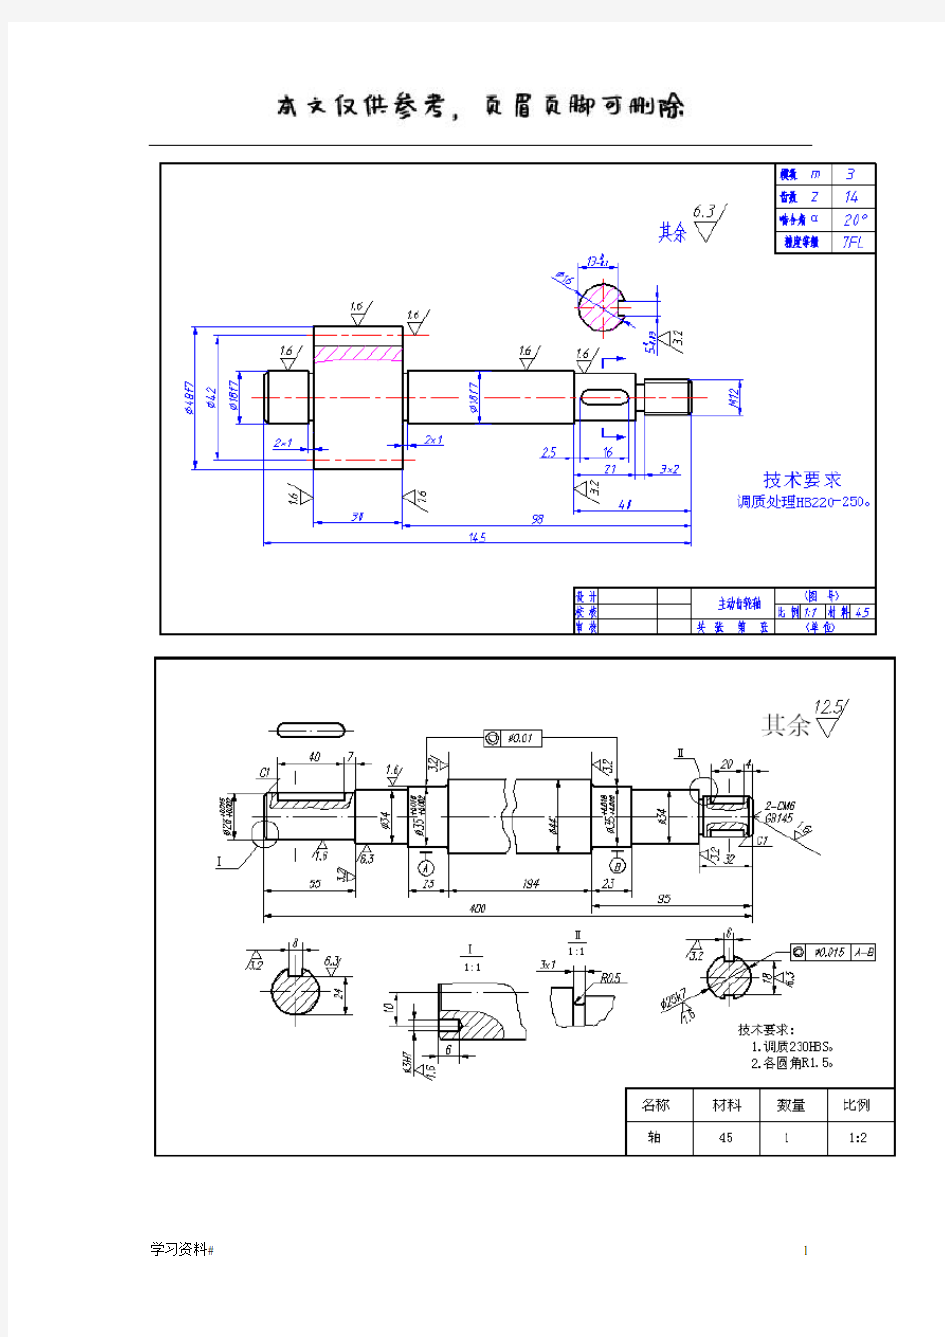 齿轮泵的零件图与装配图(优推内容)